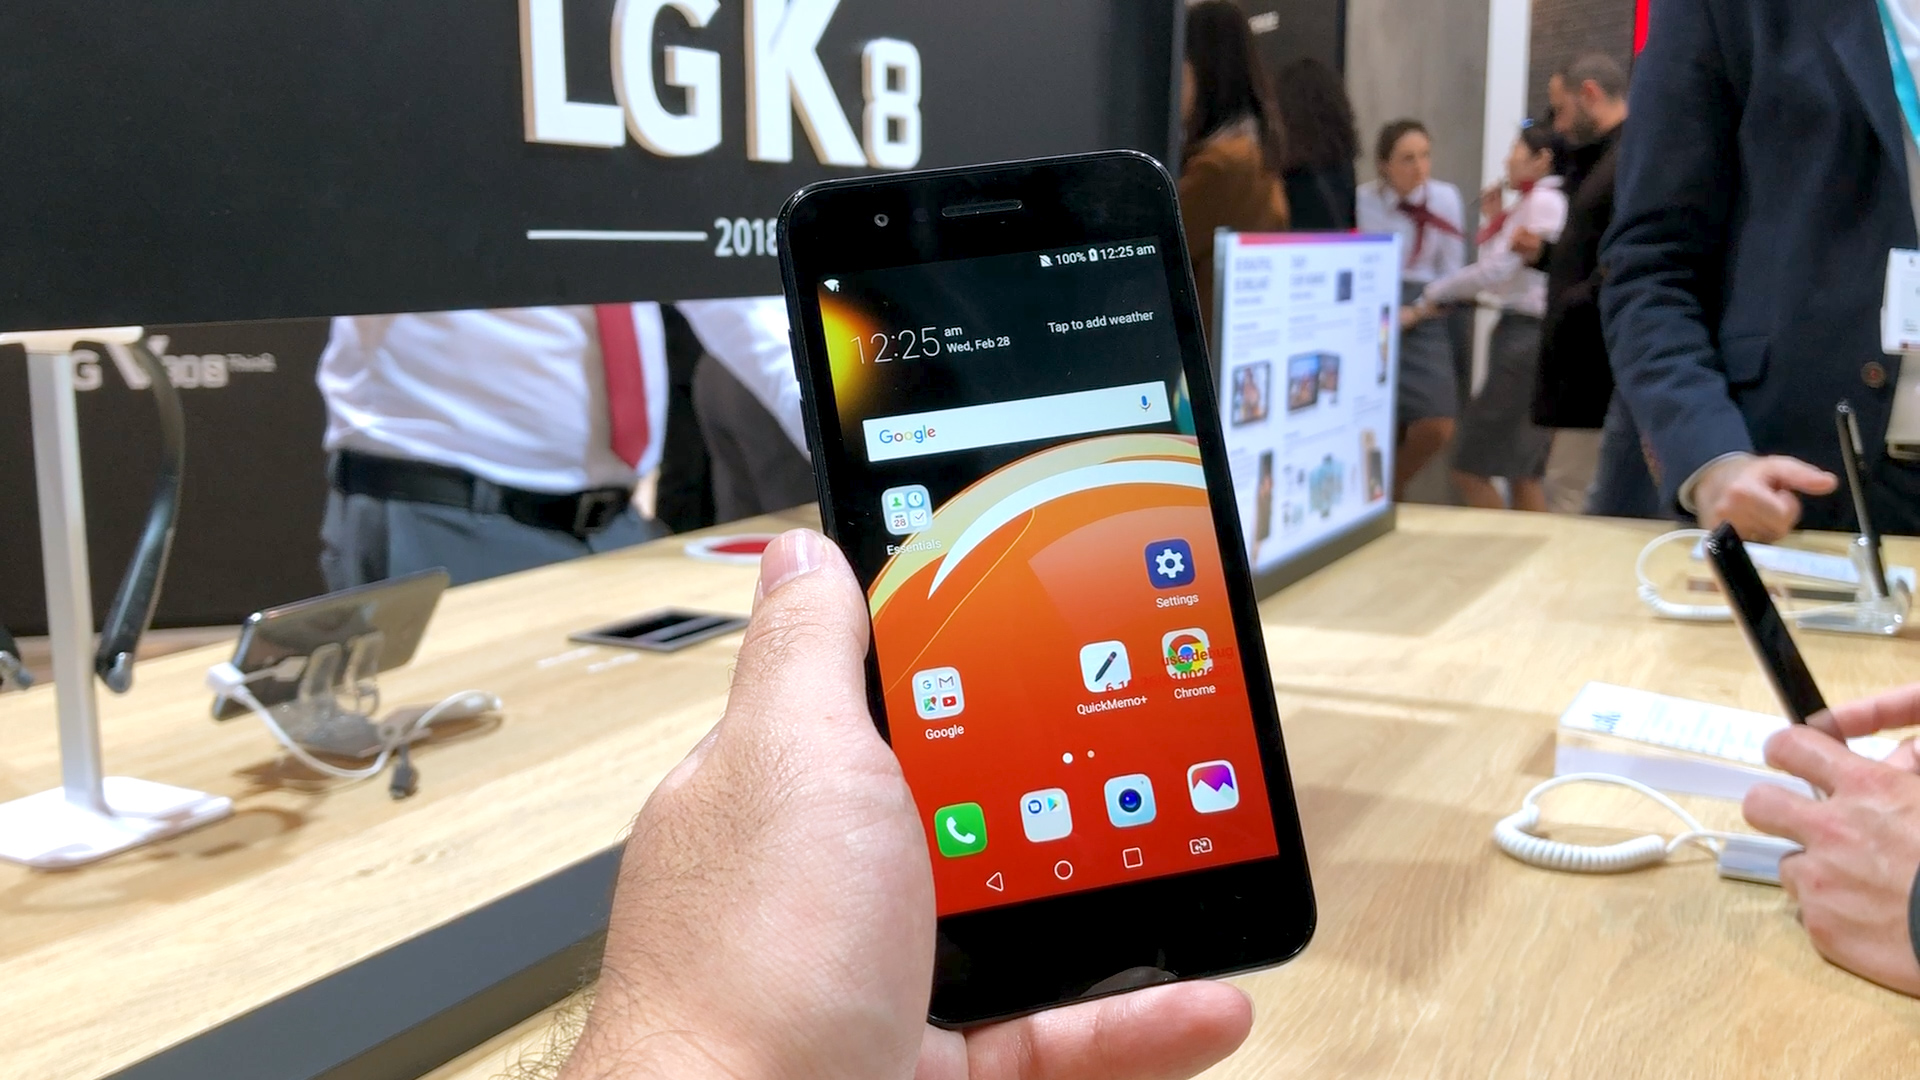 LG K8 e K10 (2018): os básicos da LG voltam quase do mesmo jeito